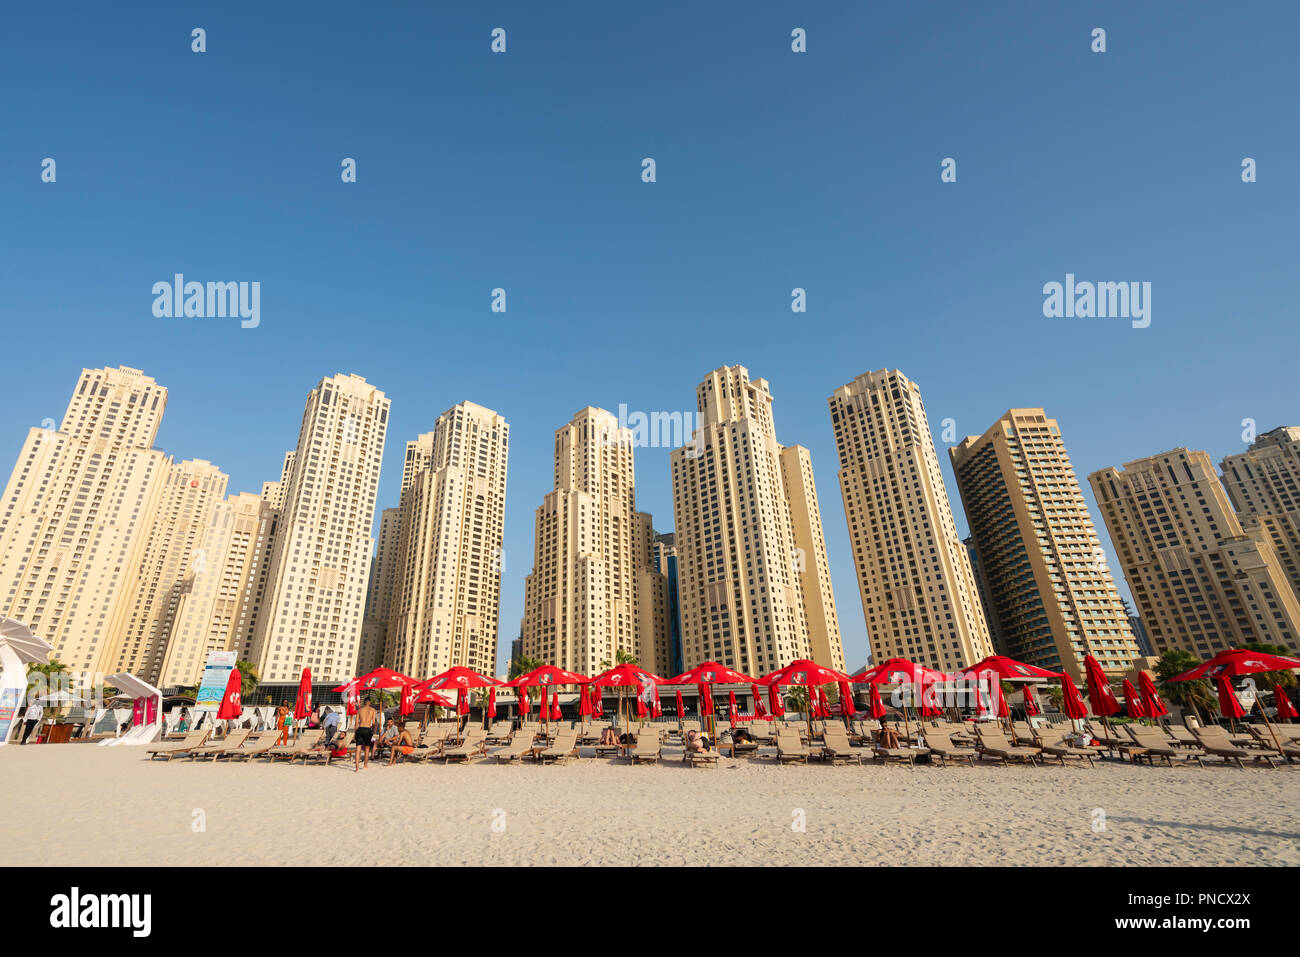 Vista de la playa y el alto edificio de apartamentos, en la playa de Jumeirah Beach distrito moderno de Dubai, EAU, Emiratos Árabes Unidos. Foto de stock